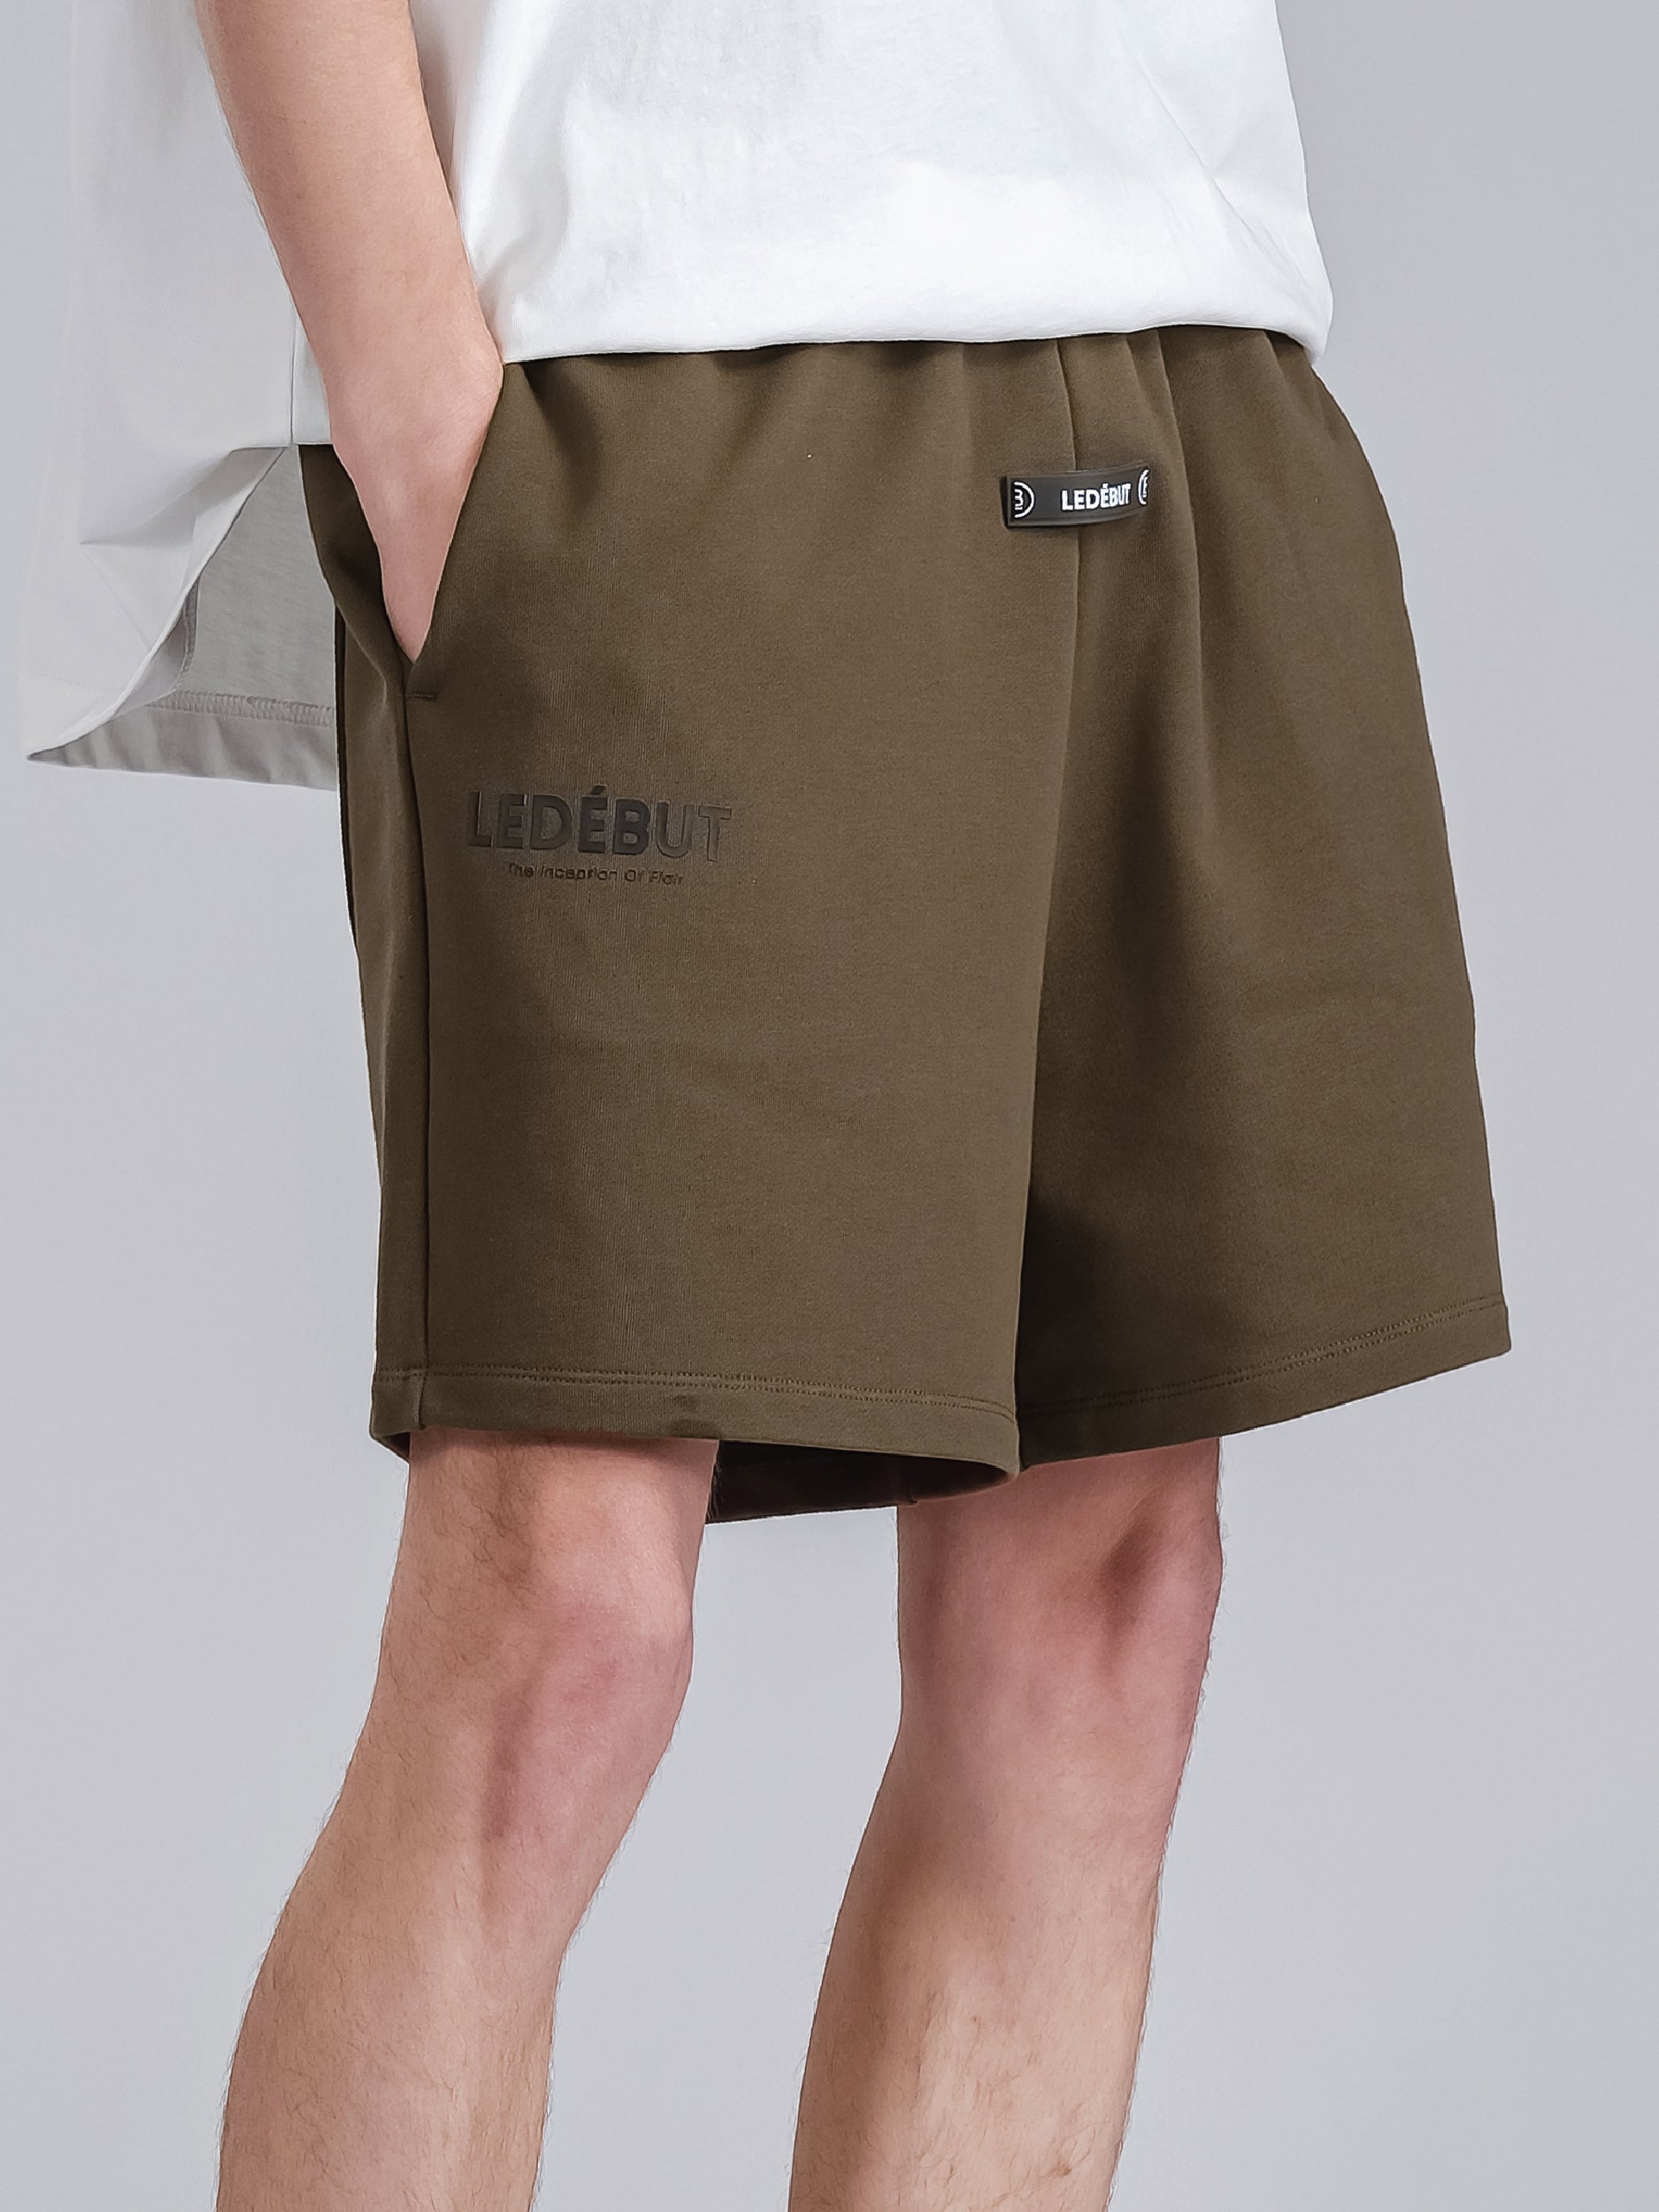 Mens Khaki Shorts, Cargo Shorts For Men Short Pants Big Man Shorts Men's  Casual Drawstring Shorts Casual Outdoor Pants Slim Fashion Jogging Printed  Multi-Pocket Shorts Stretch And (M, Army Green) at Amazon